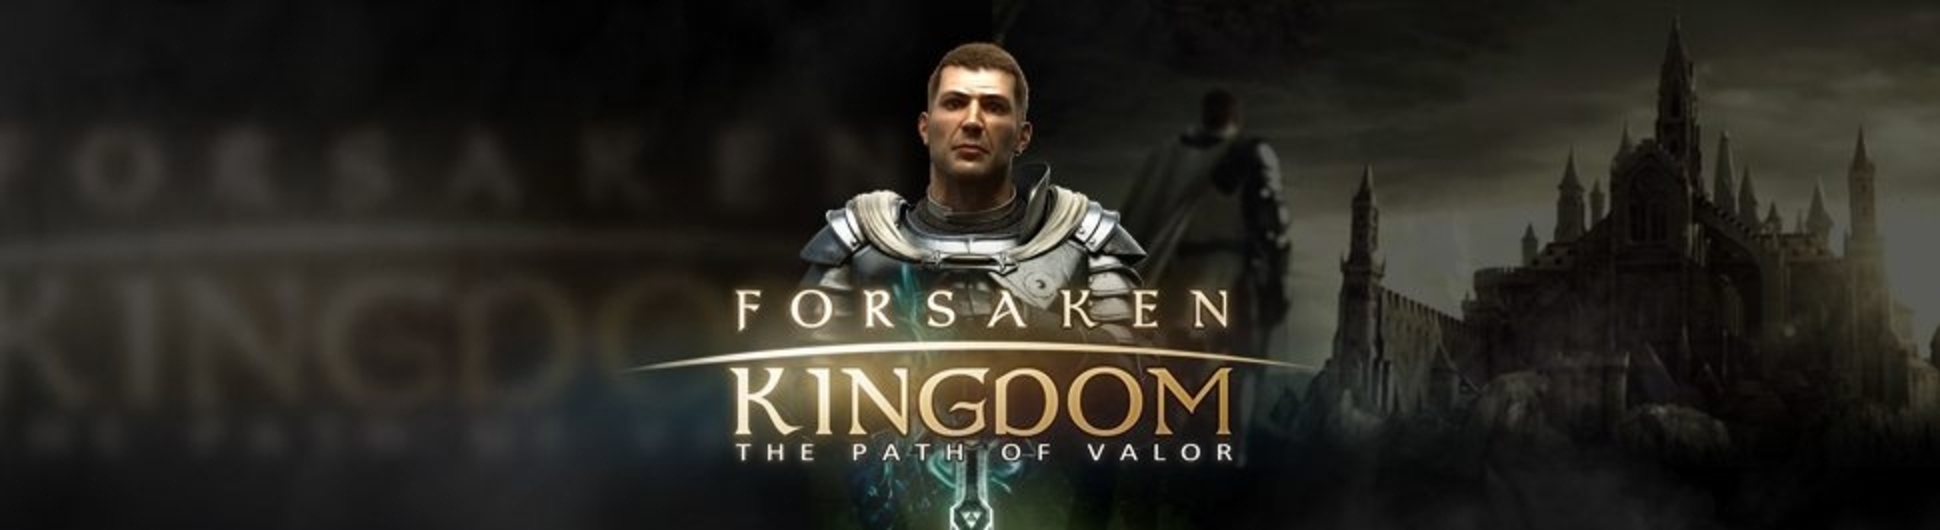 The Forsaken Kingdom Online Slot Demo Game by Rabcat